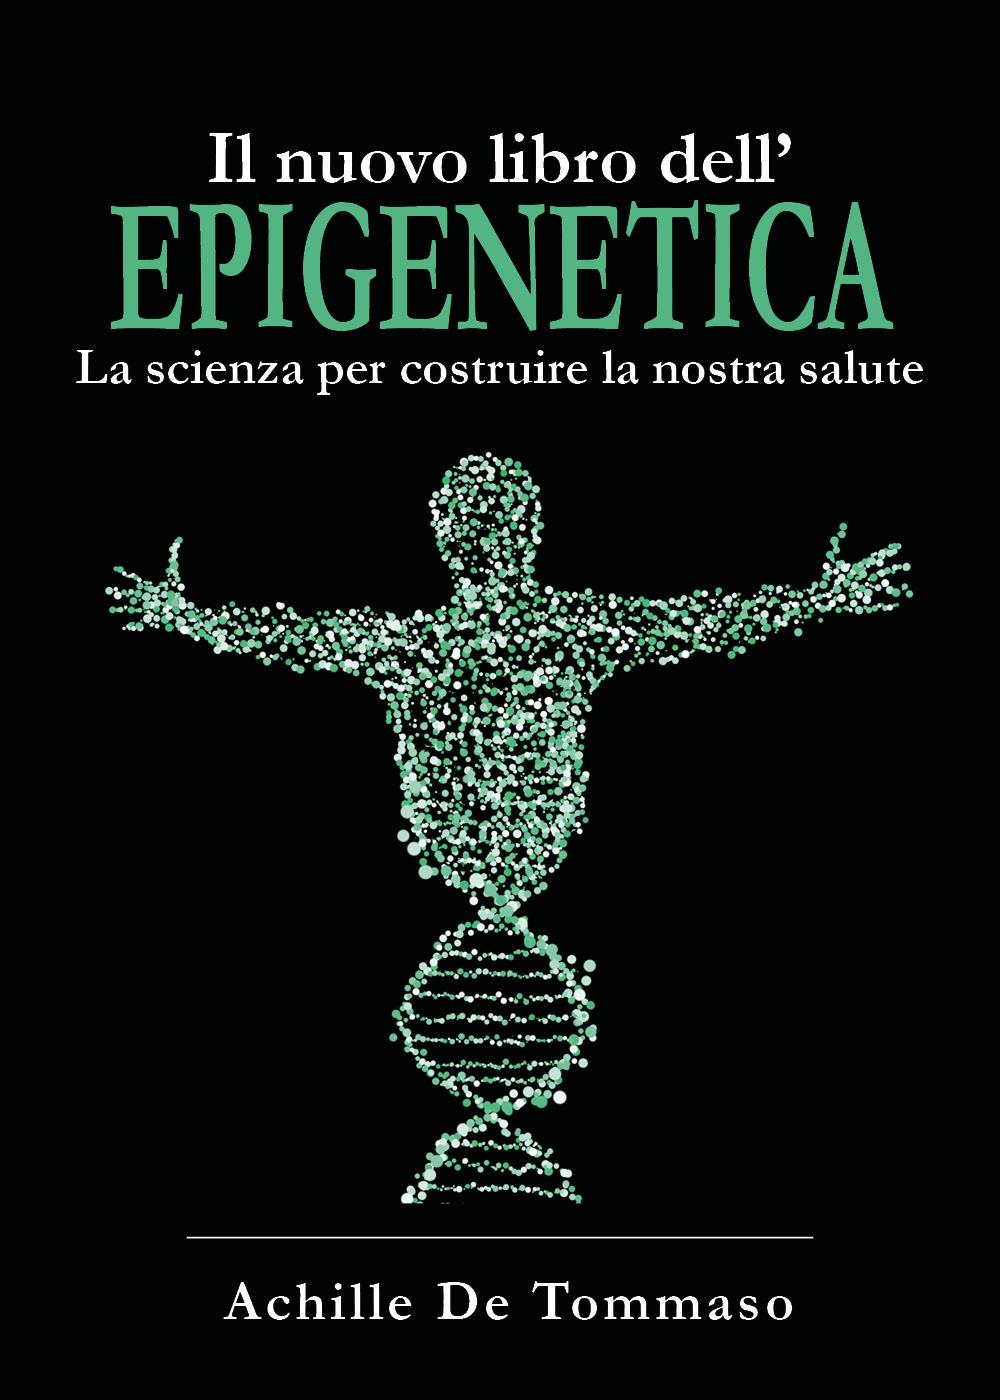 Il nuovo libro dell'Epigenetica